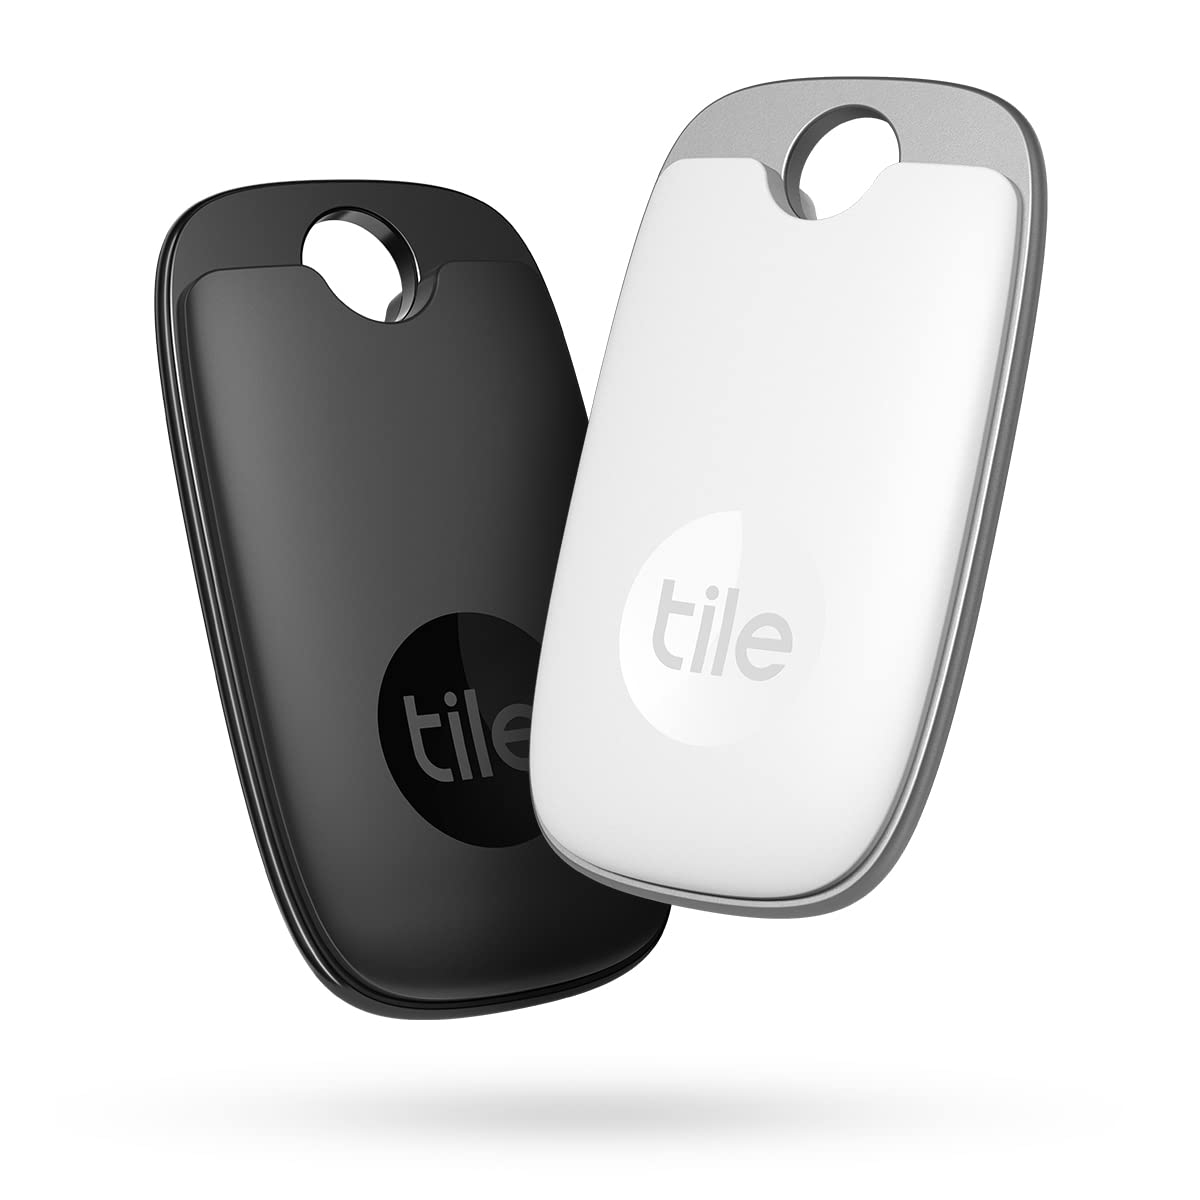 Tile Pro (2022) Bluetooth Schlüsselfinder, 2er Pack, 120m Reichweite, inkl. Community Suchfunktion, iOS & Android App, kompatibel mit Alexa & Google Home, 1x schwarz,1x weiß, Schwarz/Weiß